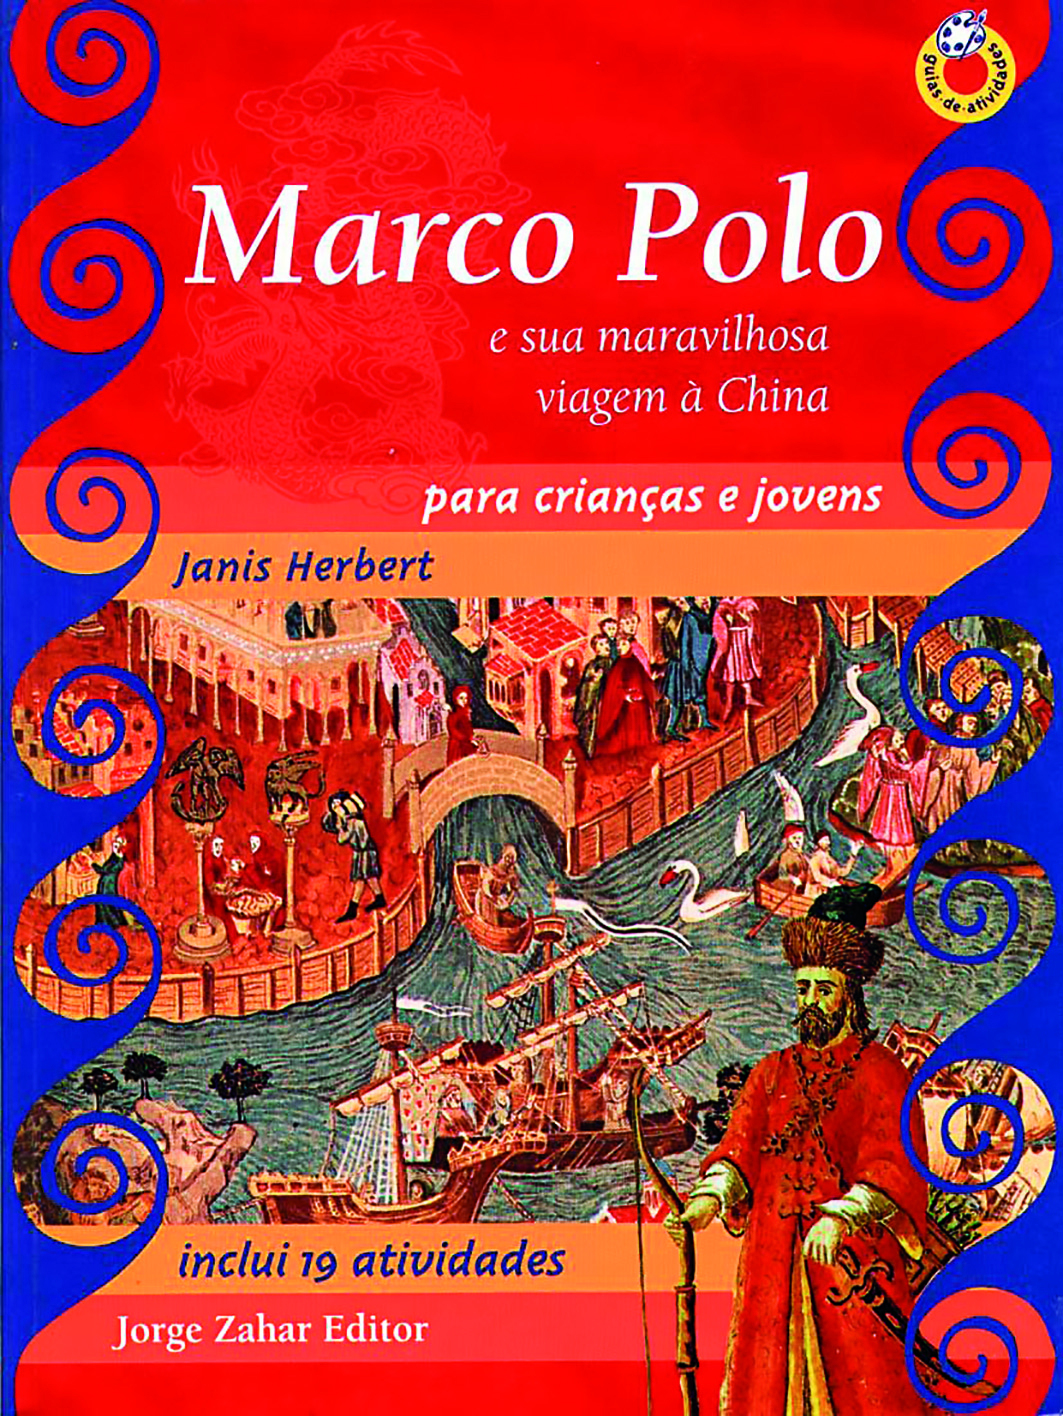 Capa de livro. Na parte superior, o título sobre o fundo vermelho. Ao centro, ilustração de embarcações perto de uma cidade. Na parte inferior, ilustração de um homem em pé com um grande chapéu e roupas largas.